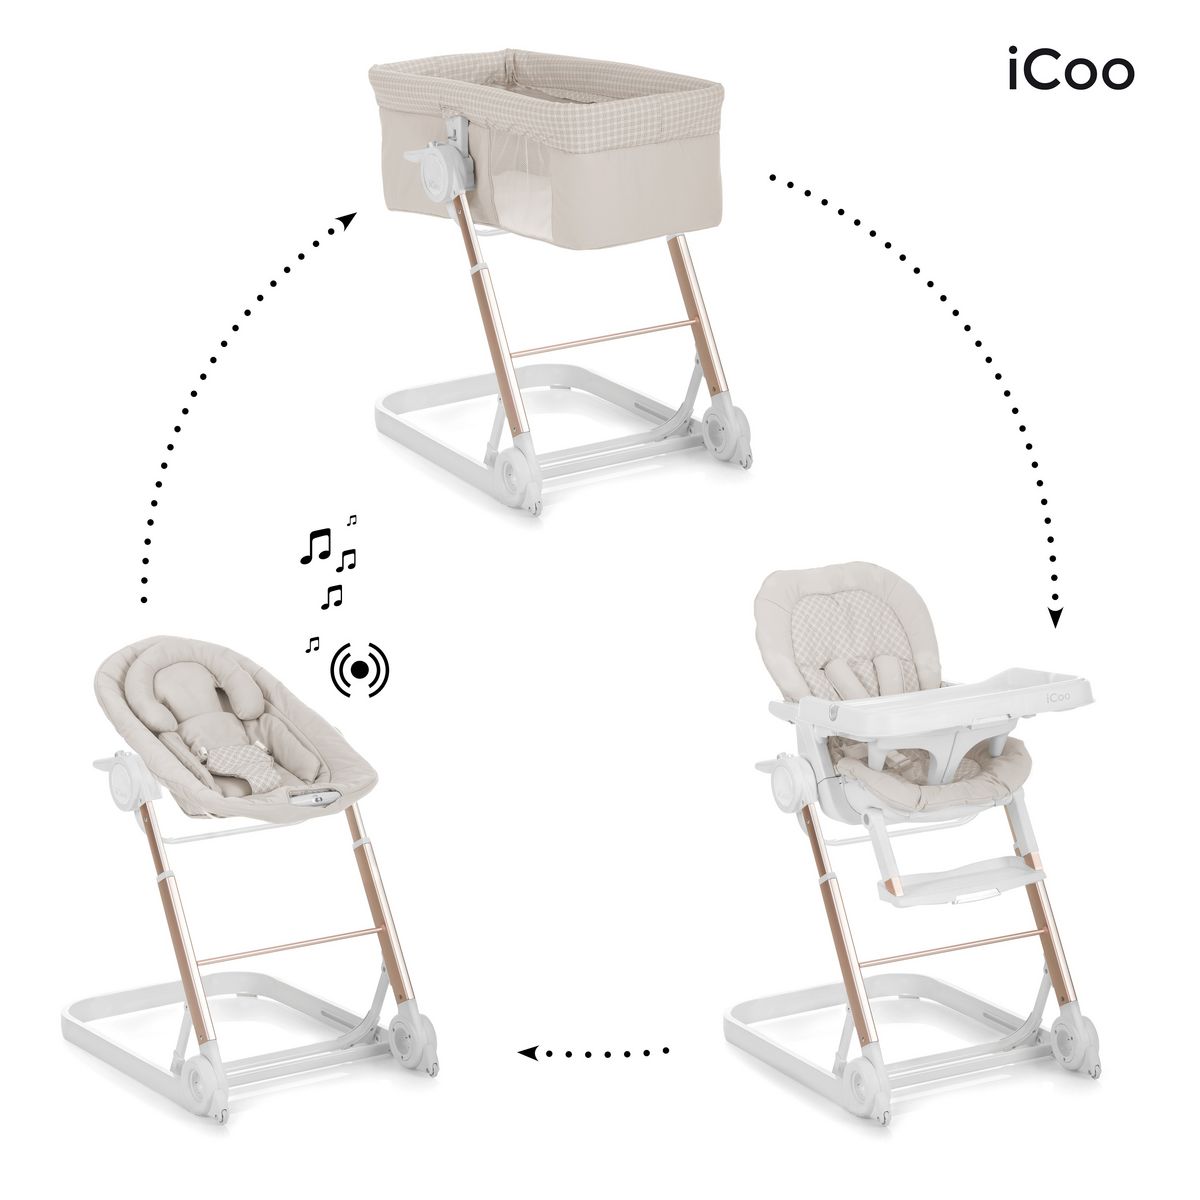 ICOO Grow with me 1 2 3: Berceau co dodo, Transat & Chaise haute pas cher 